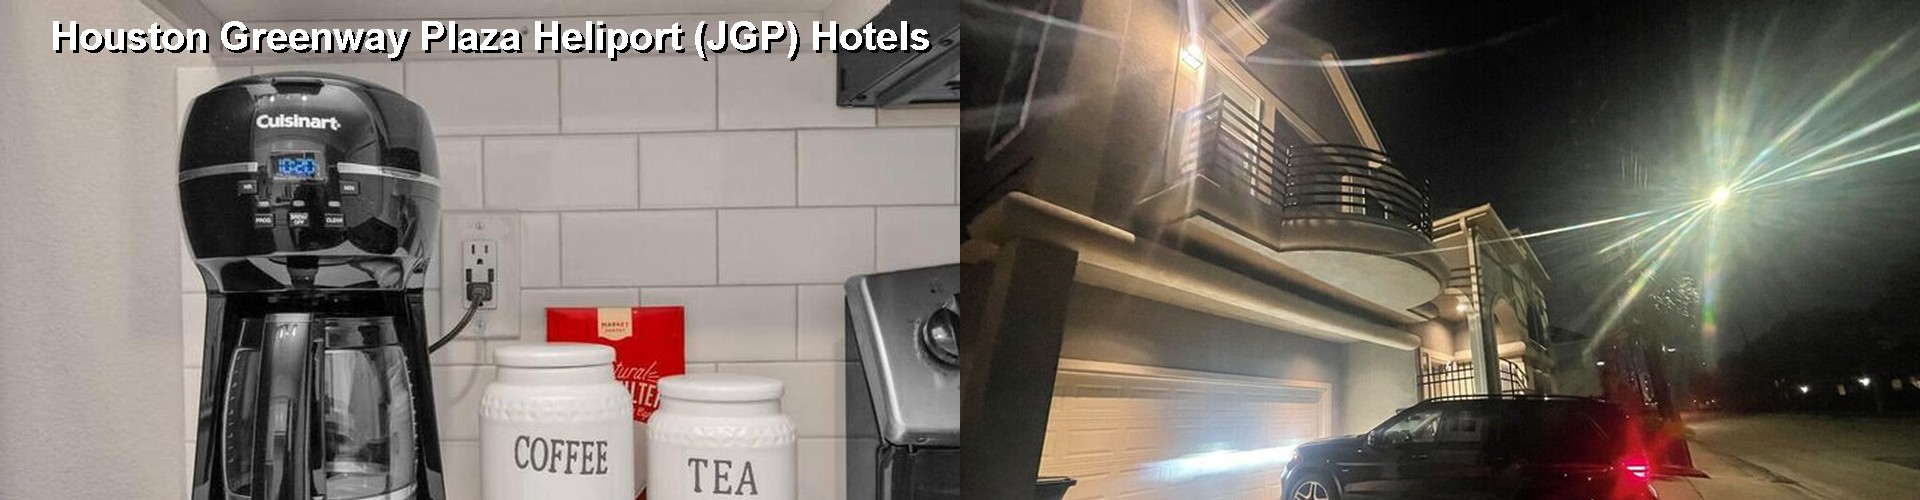 5 Best Hotels near Houston Greenway Plaza Heliport (JGP)